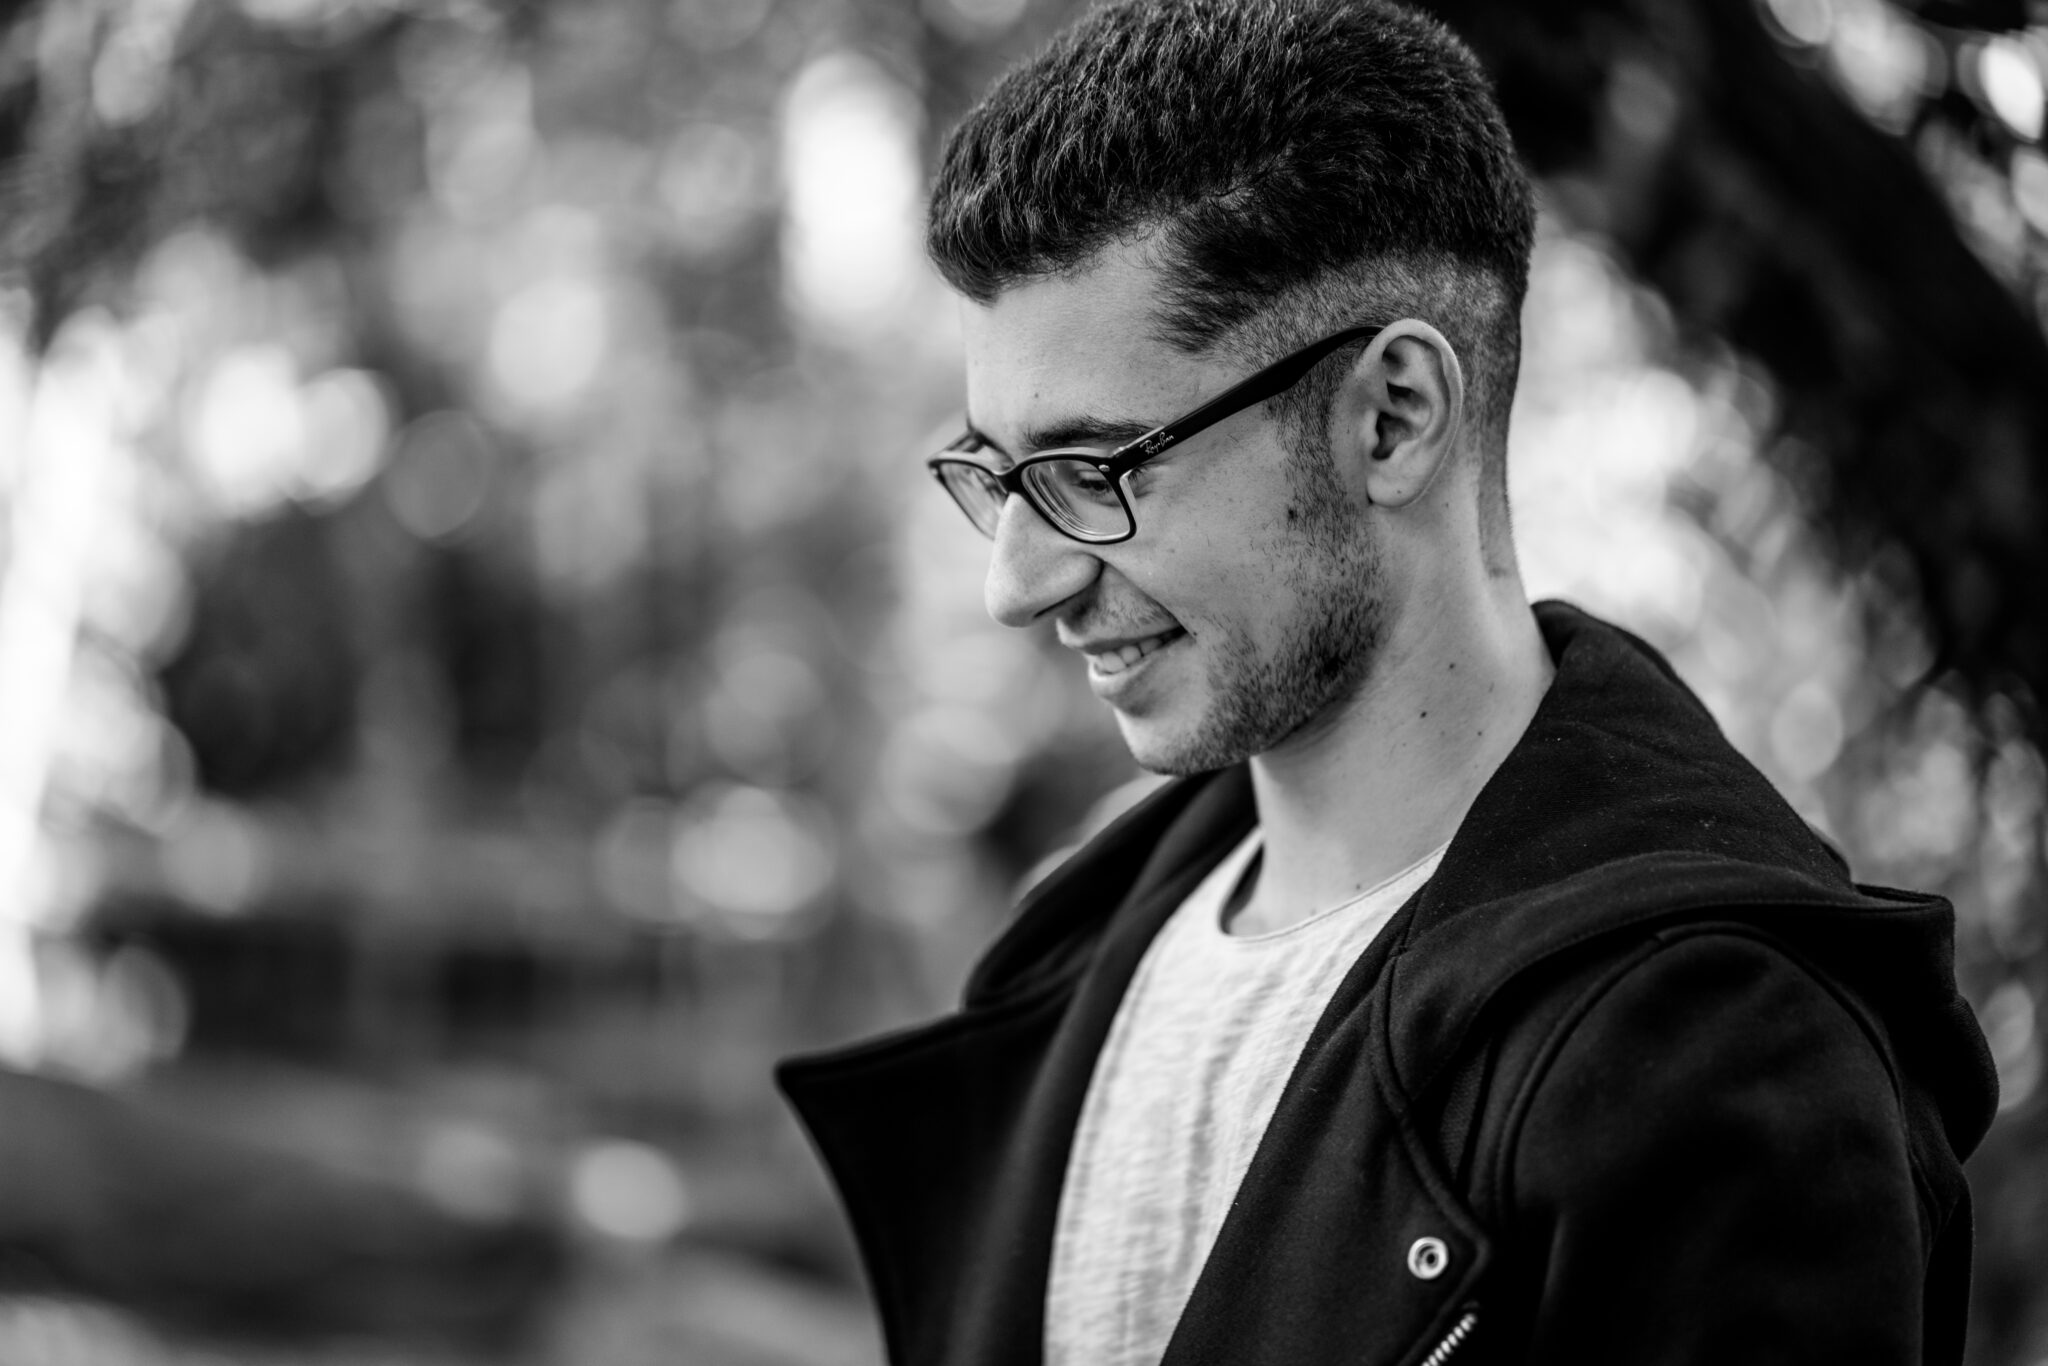 Seitliches Portrait von jungem Mann mit Brille in Schwarz Weiß